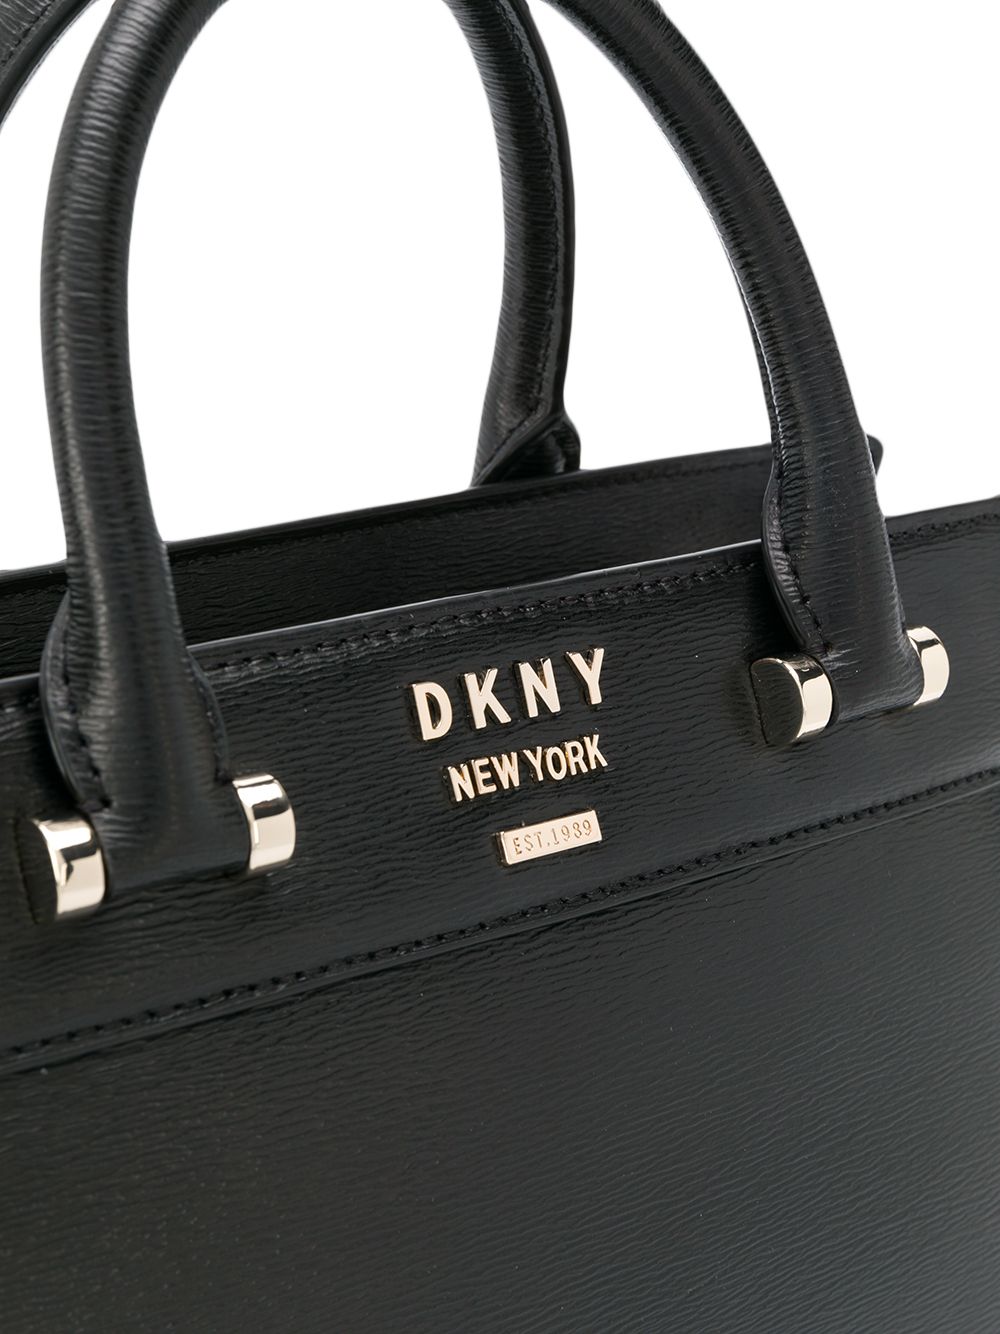 фото Dkny сумка-тоут с логотипом